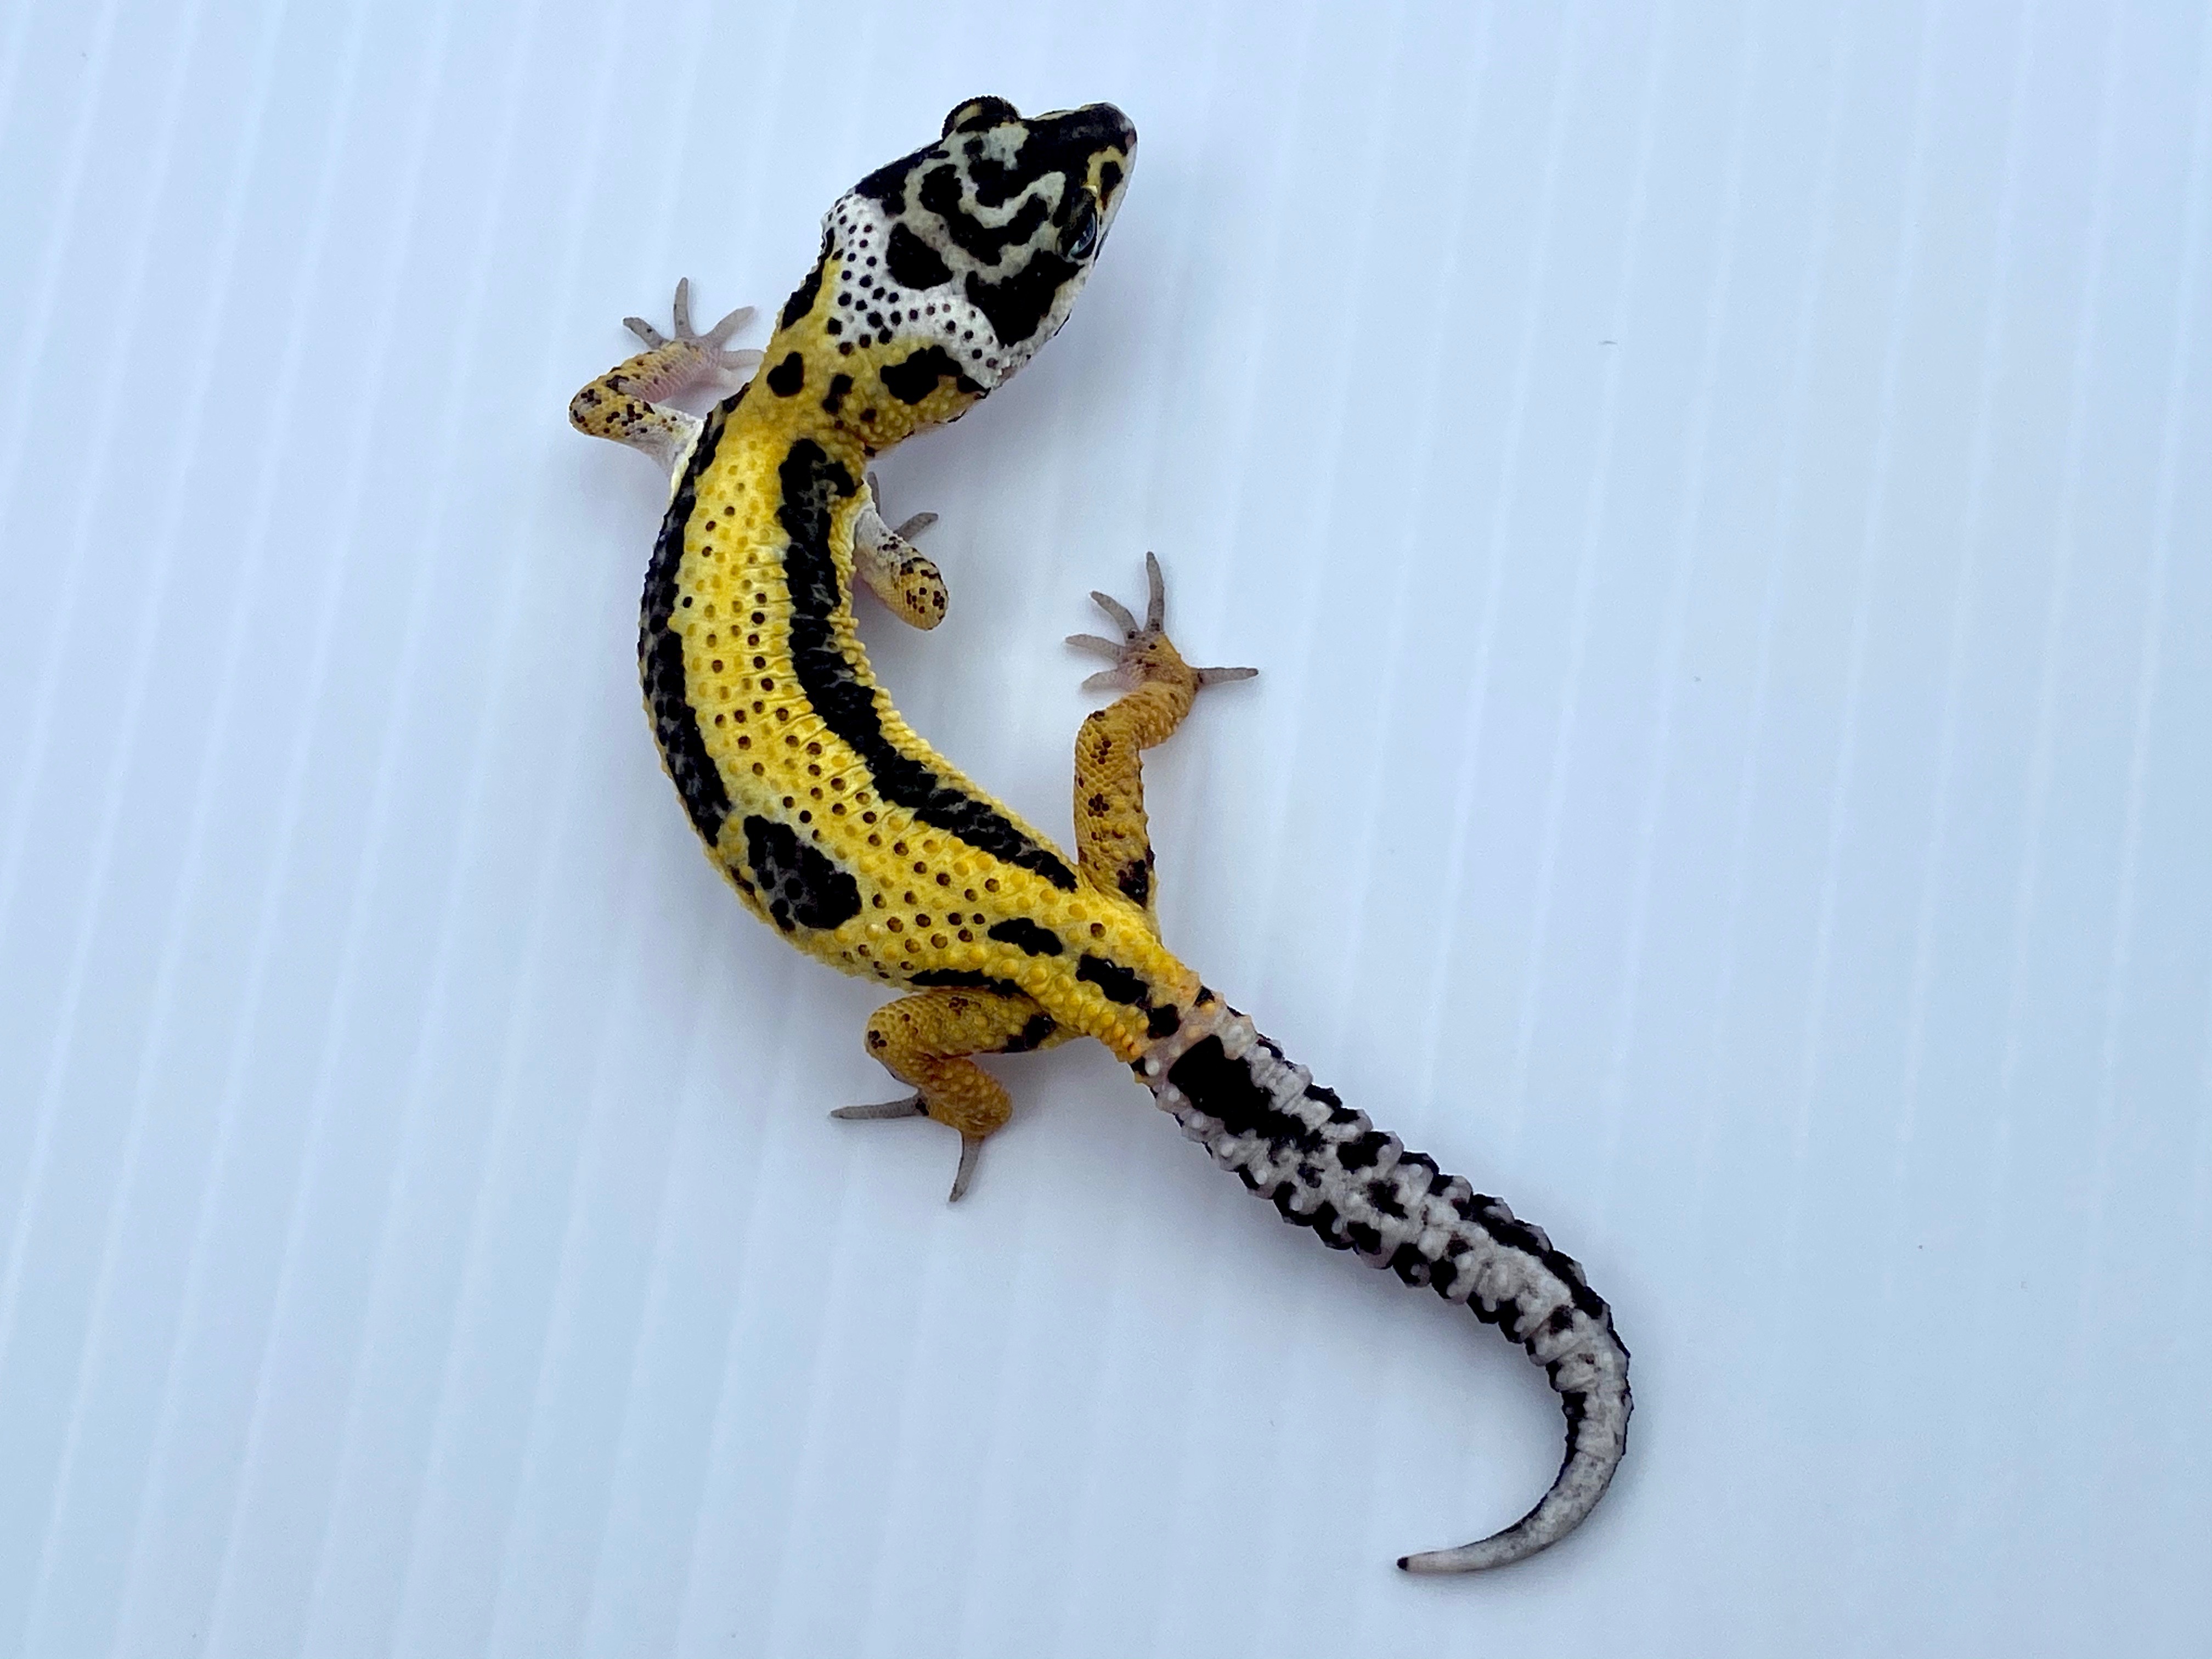 Lemon Frost Leopard Gecko by The Zartopian Reptile Society